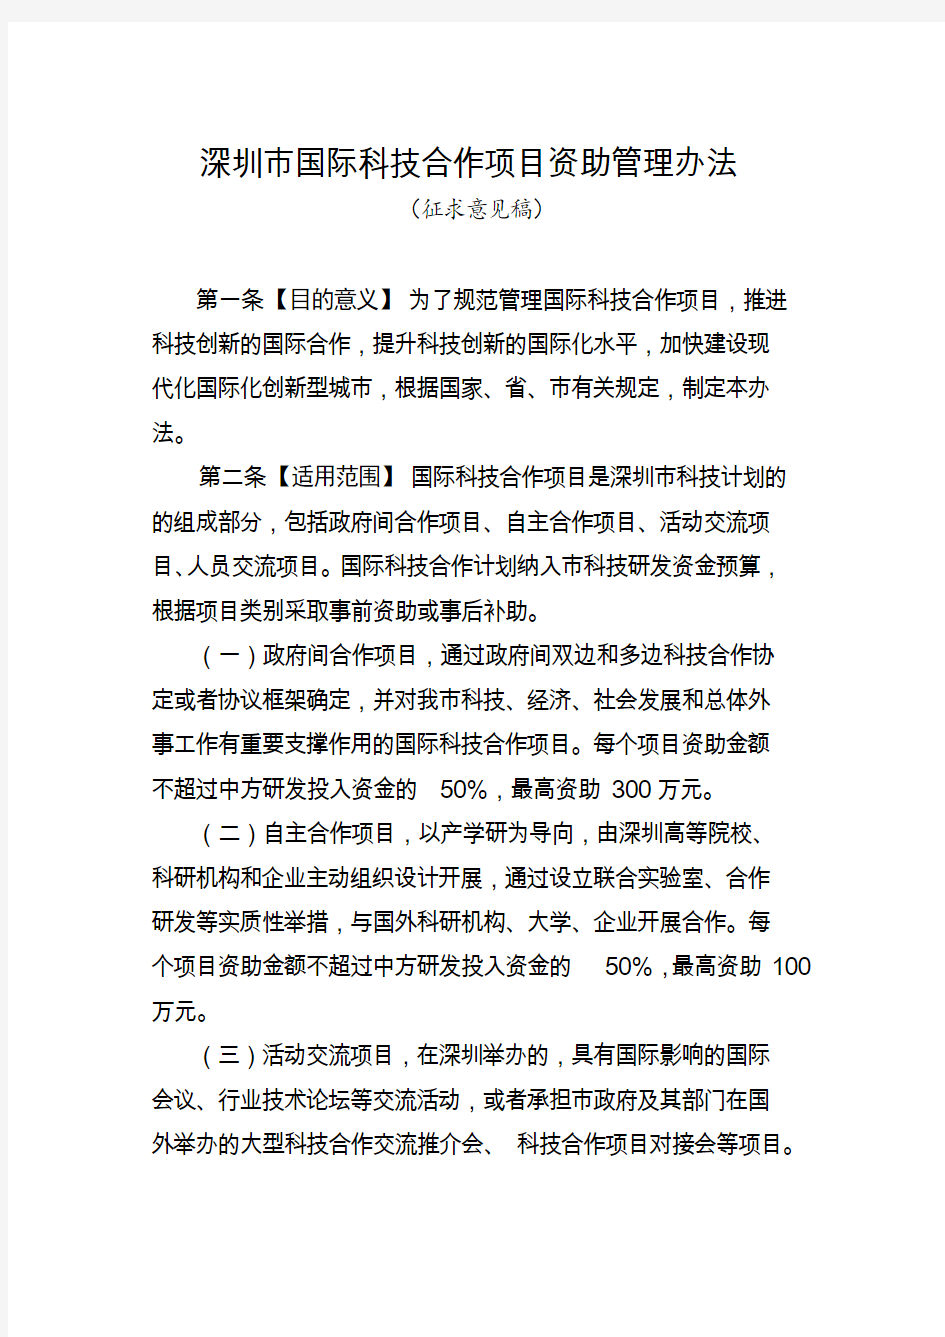 《深圳市国际科技合作项目资助管理办法》(征求意见稿)